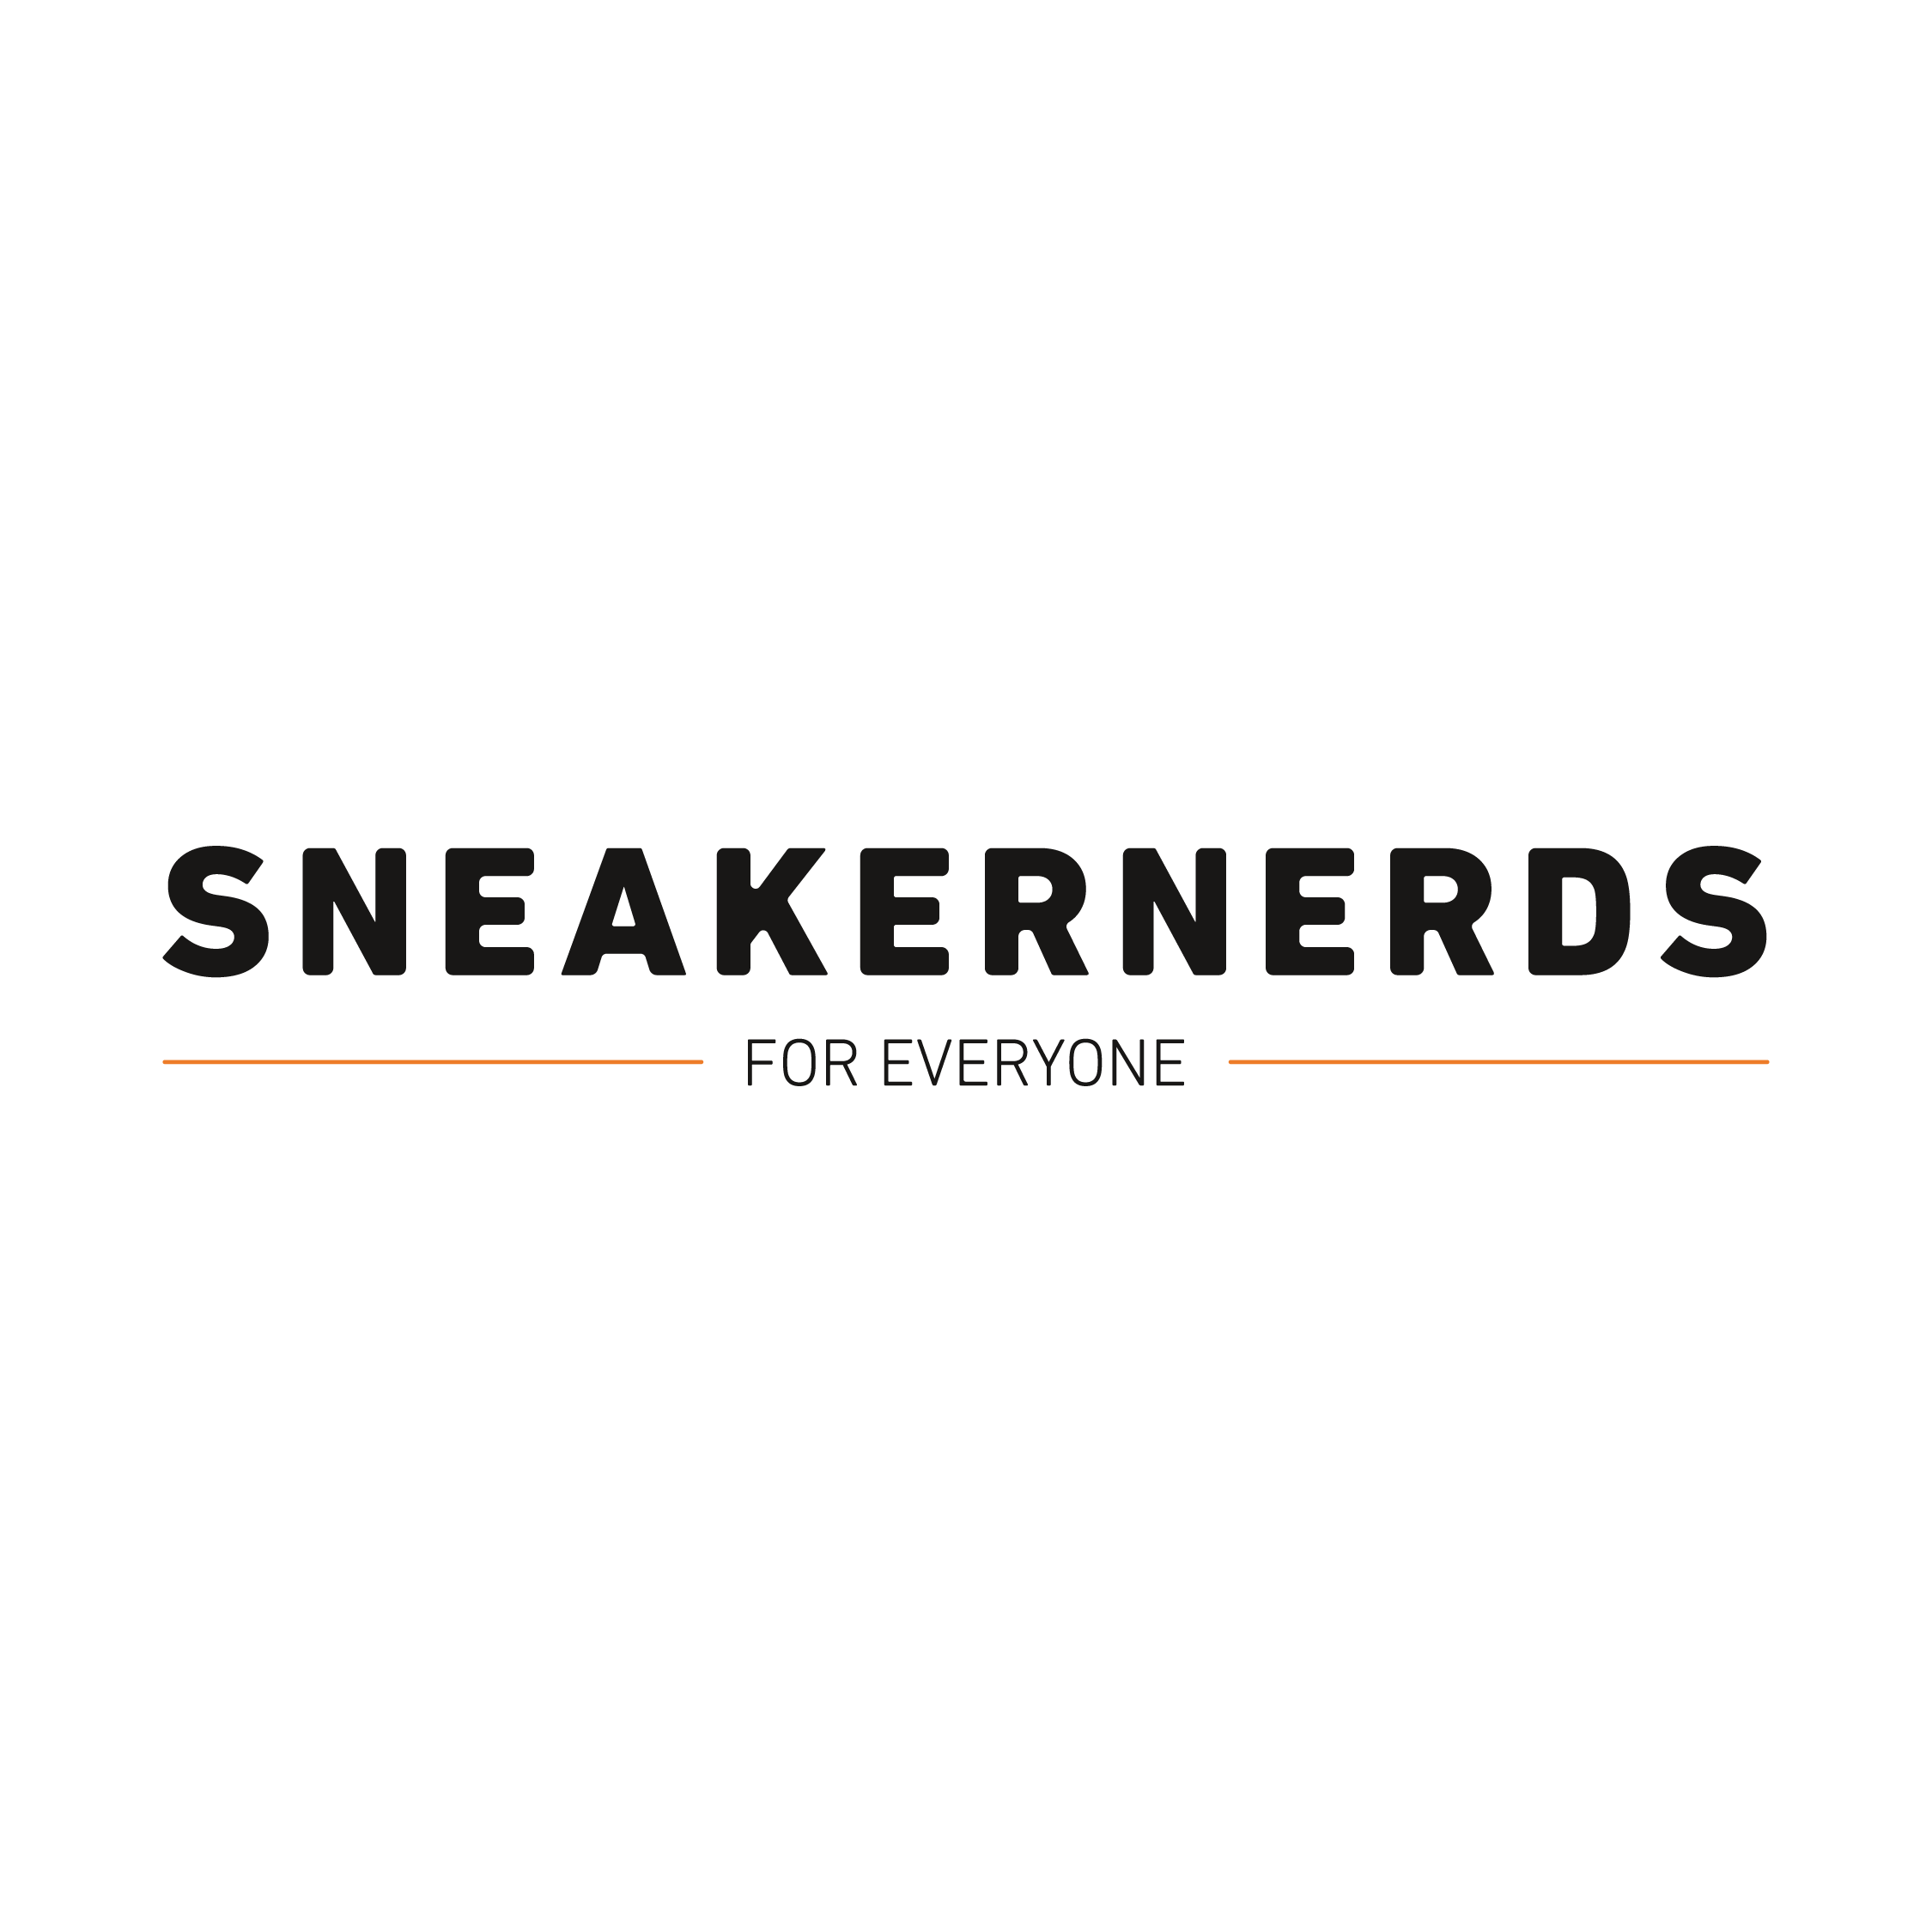 Website ontwikkeld in Shopify voor Sneakernerds in Zoetermeer